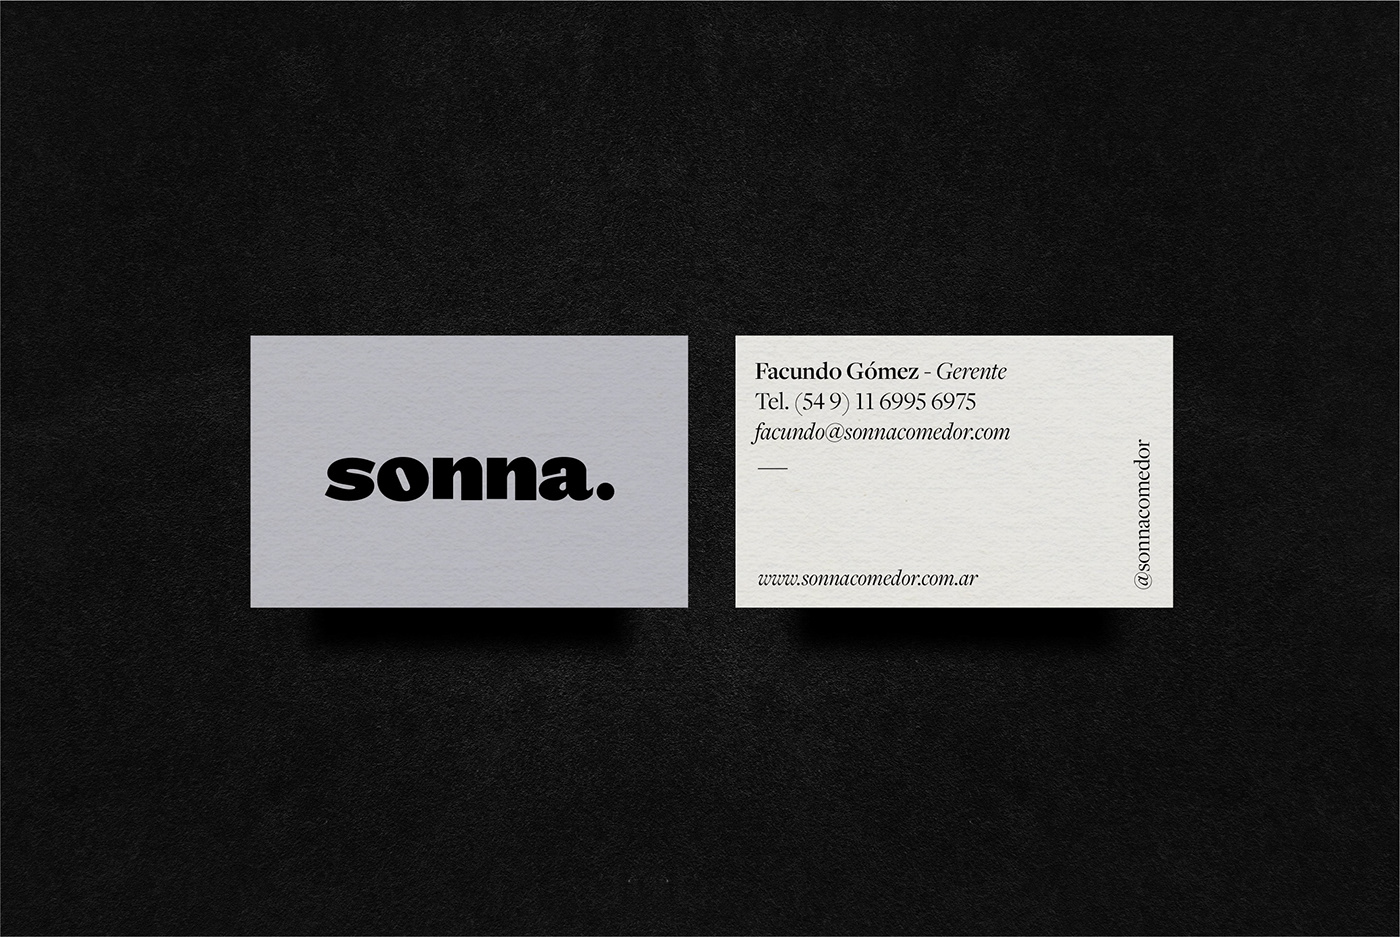 sonna comedor branding  estudio nuar Identidad de marca brand identity Packaging menu Signage señaletica